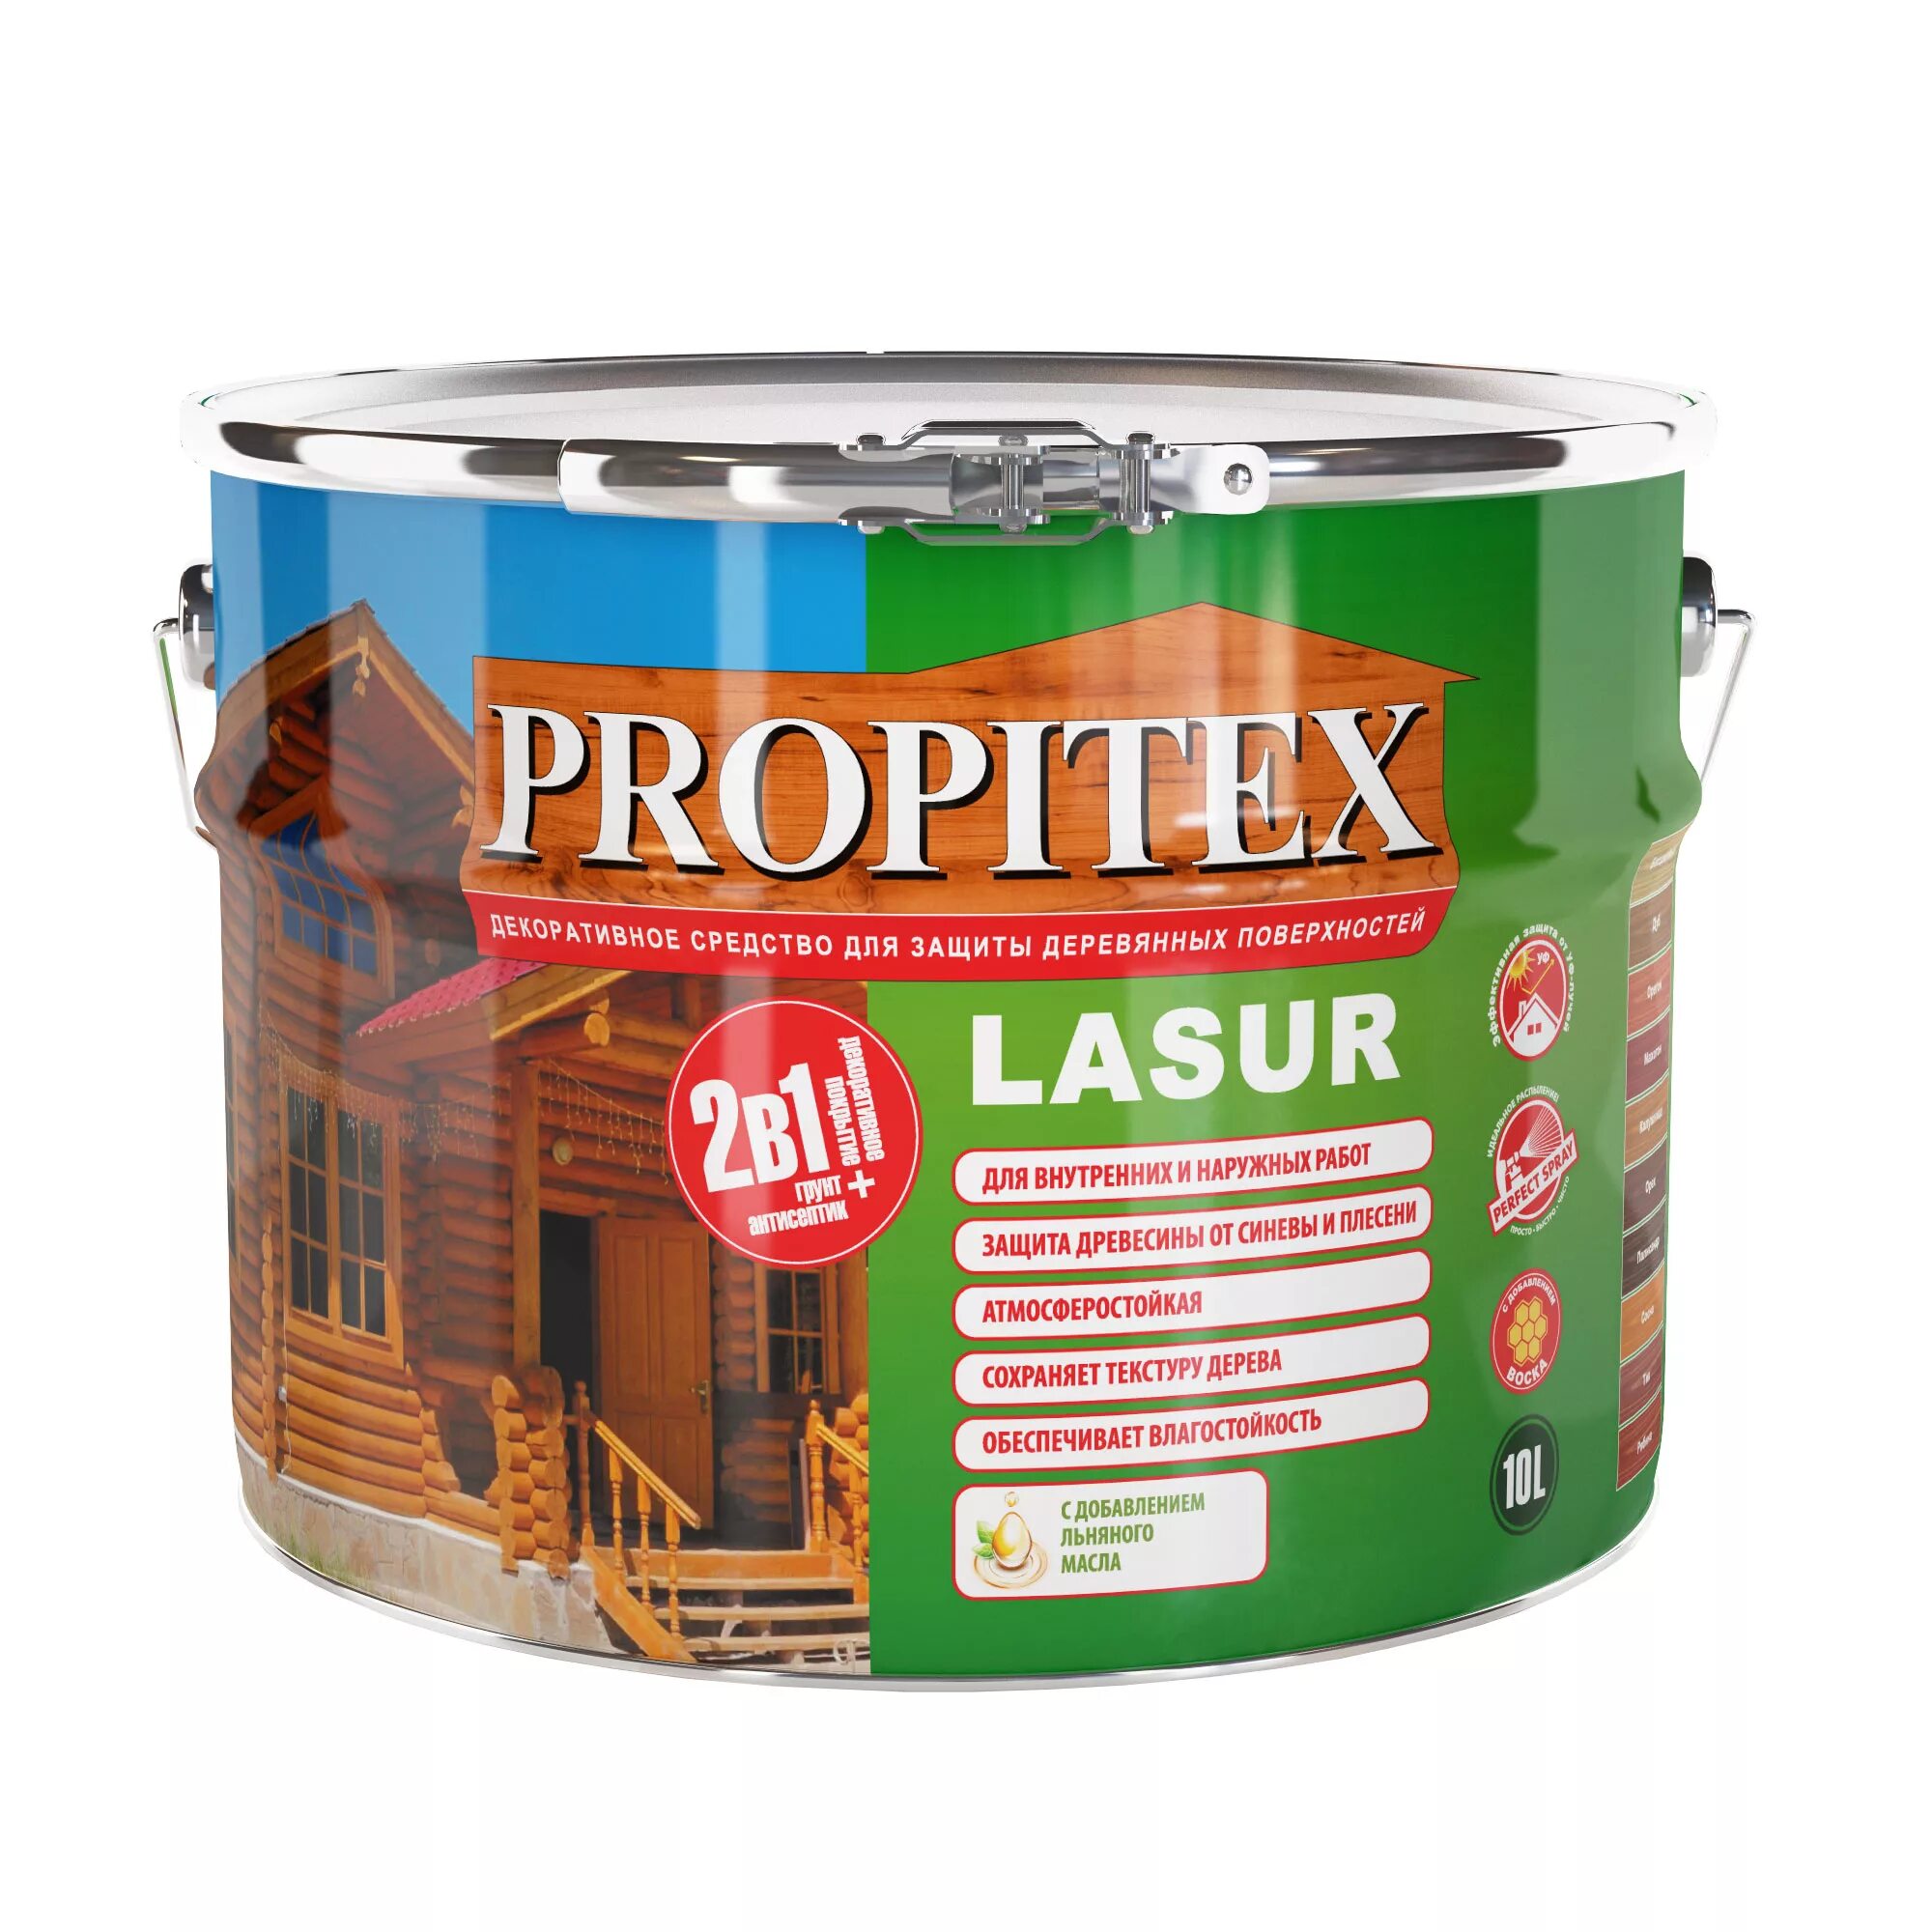 Profilux антисептик для дерева 10л. PROPITEX Lasur для дерева. Антисептик «PROPITEX Lasur. Дуб» 1л Profilux (Profilux). PROPITEX Lasur калужница для дерева. Пропитка для дерева без запаха